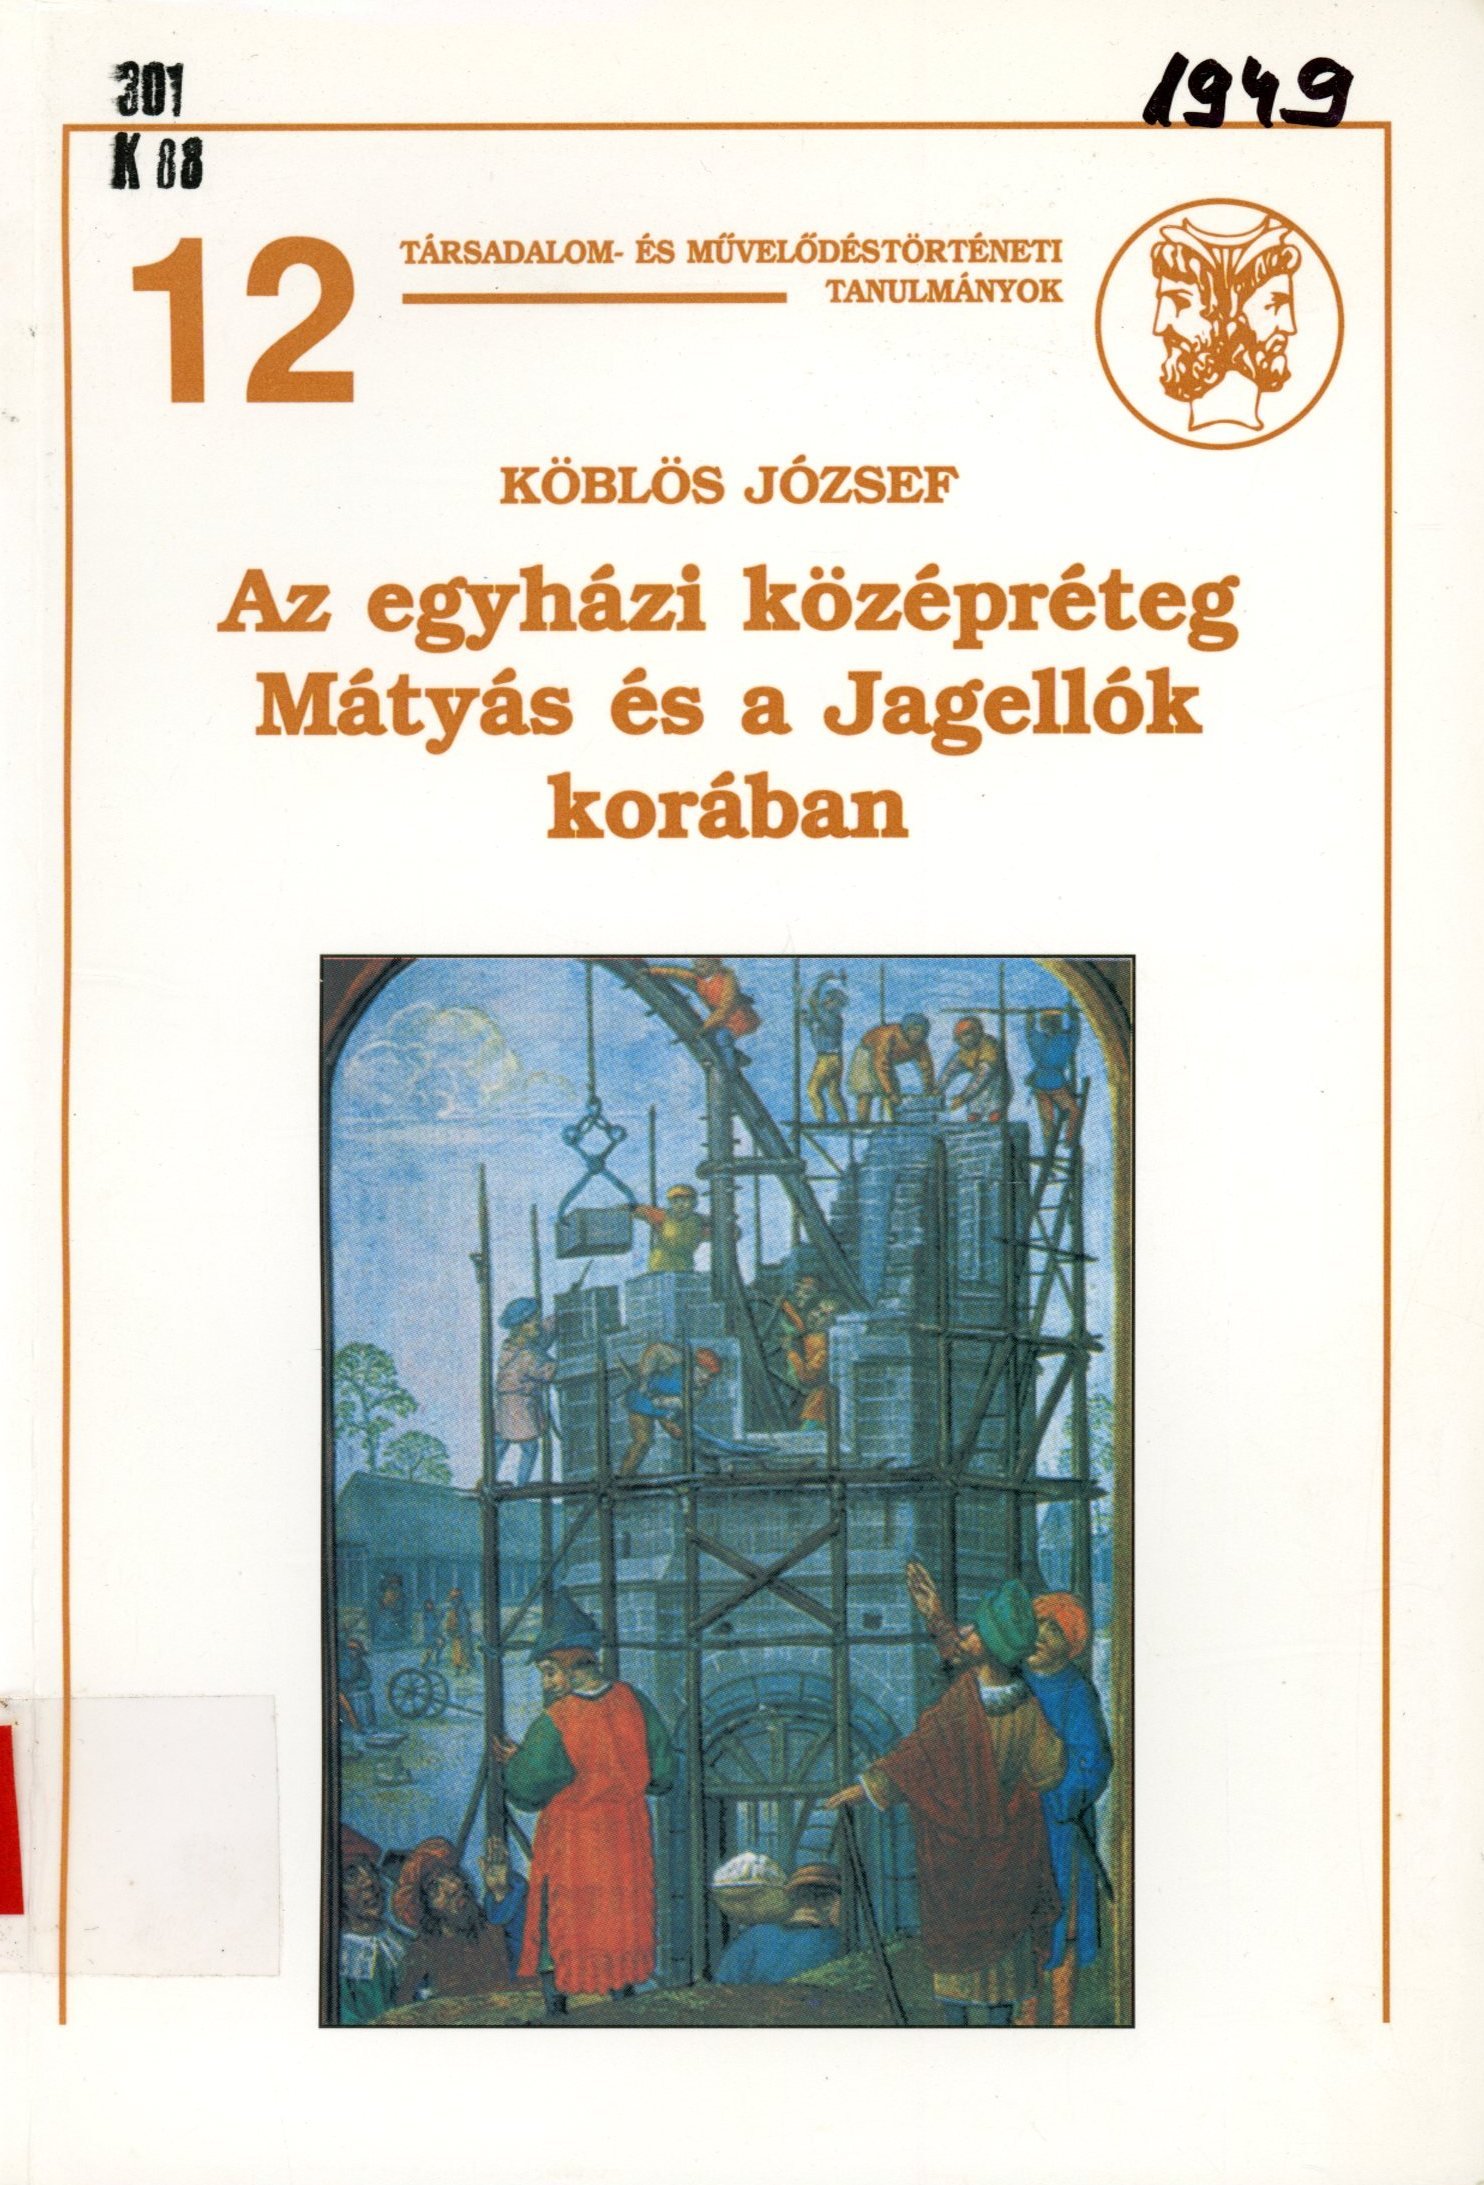 Köblös József (Erkel Ferenc Múzeum és Könyvtár, Gyula CC BY-NC-SA)